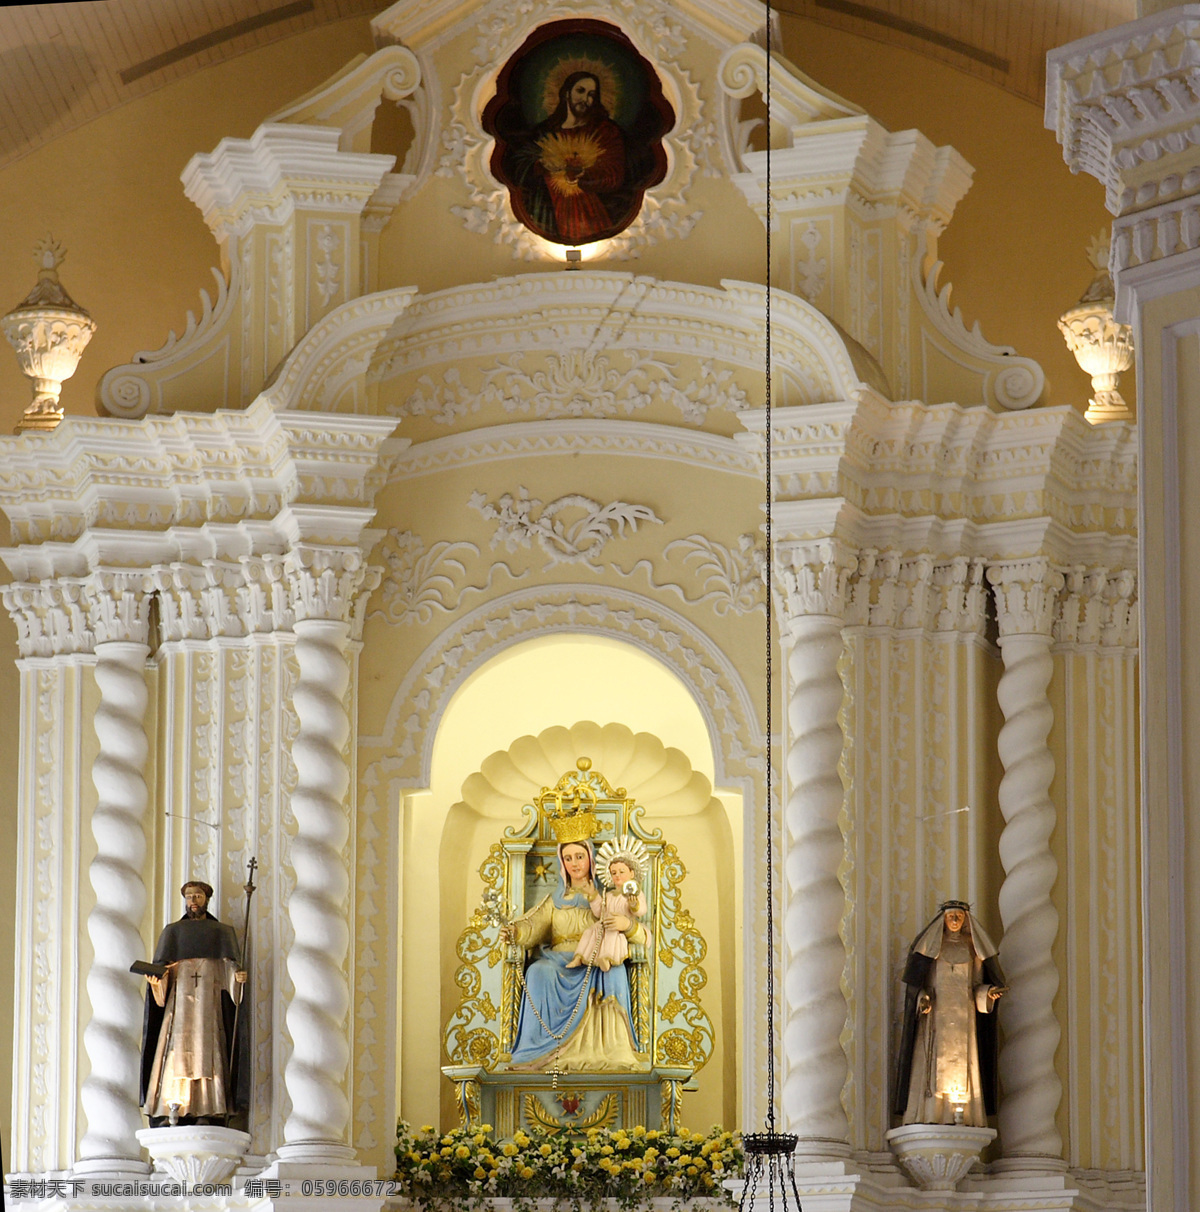 巴西 法国 基督教 教堂 欧洲 神 圣母 天主教 中世纪 英国 葡萄牙 西班牙 信仰 圣子 耶稣 宗教信仰 文化艺术